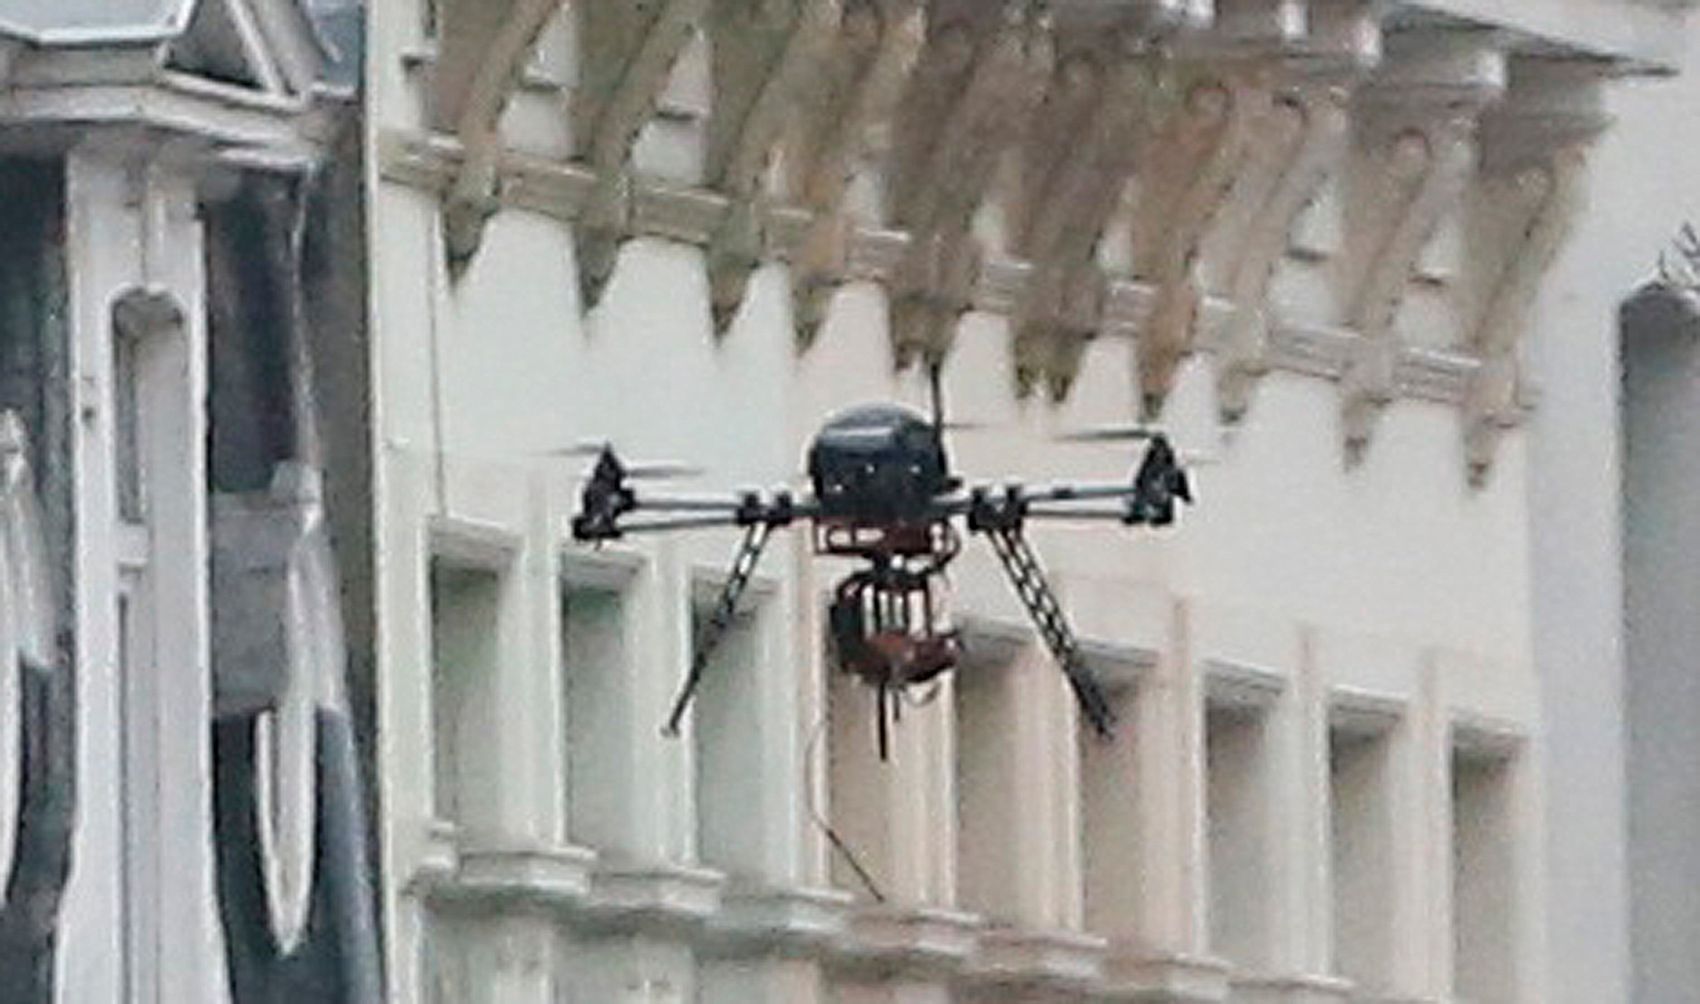 Policejní dron v místě zátahu.